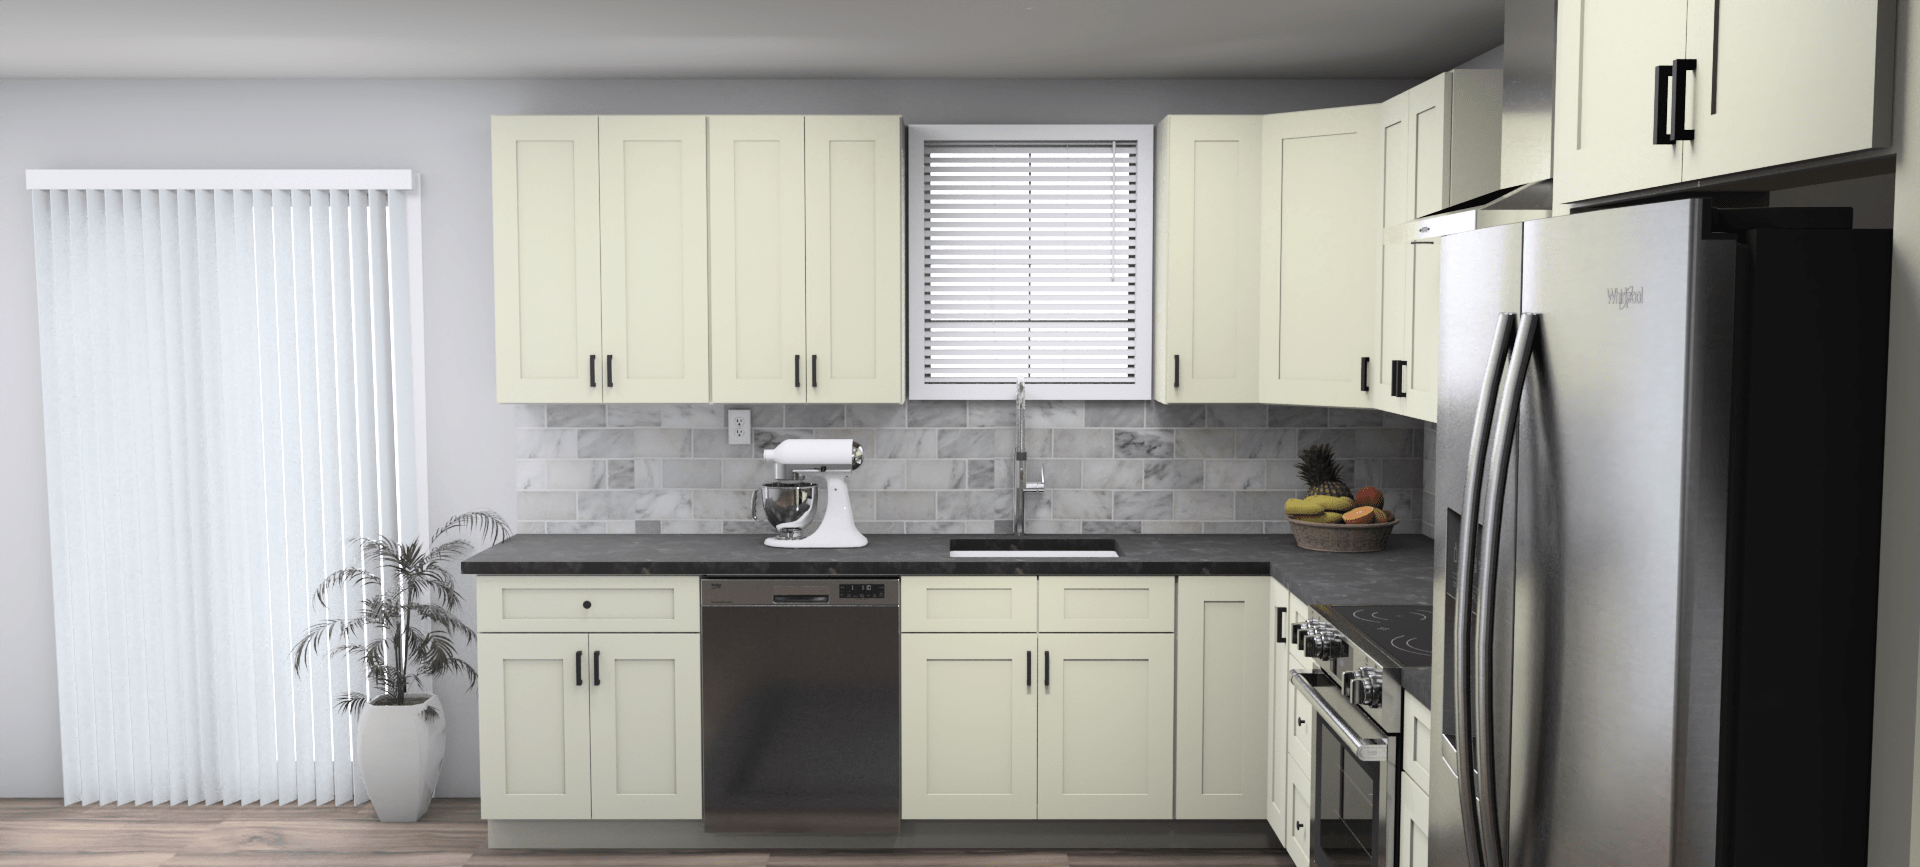 Fabuwood Allure Galaxy Linen 10 x 13 L Shaped Kitchen Side Layout Photo